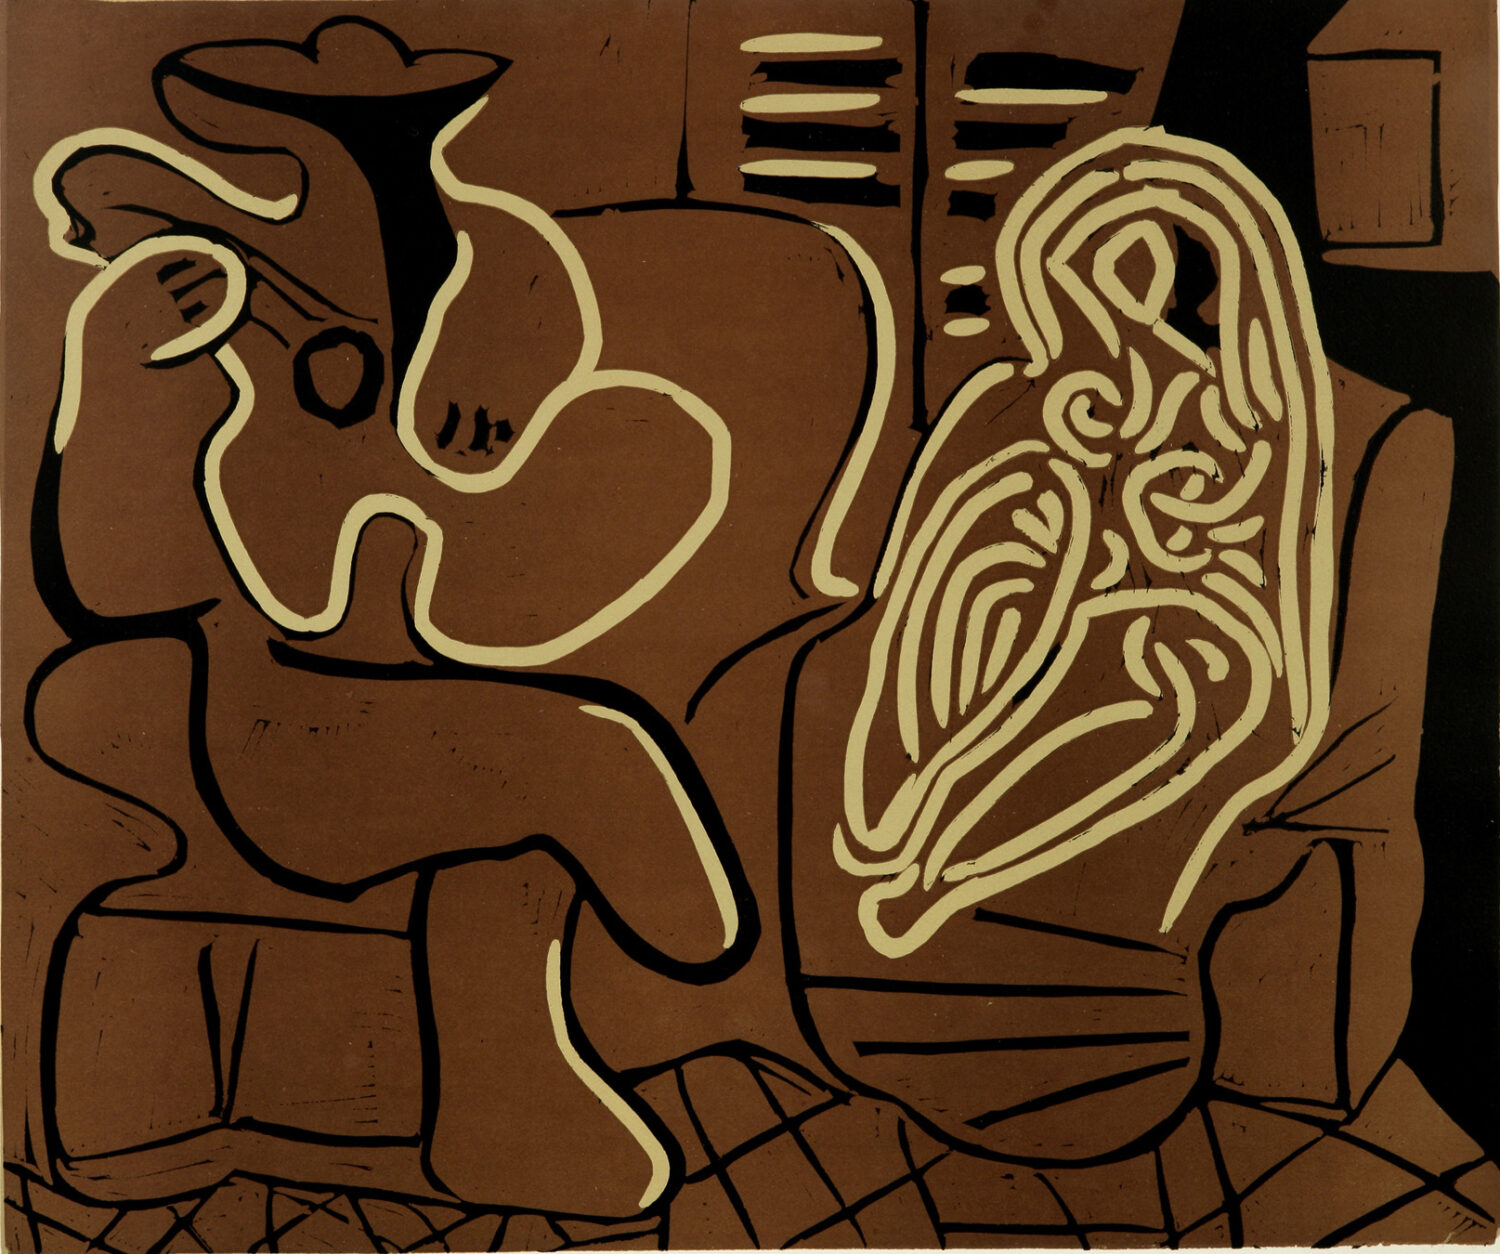 thumbnail of Lino-cut by Pablo Picasso titled Femme Dans un Fauteuil et Guitariste.